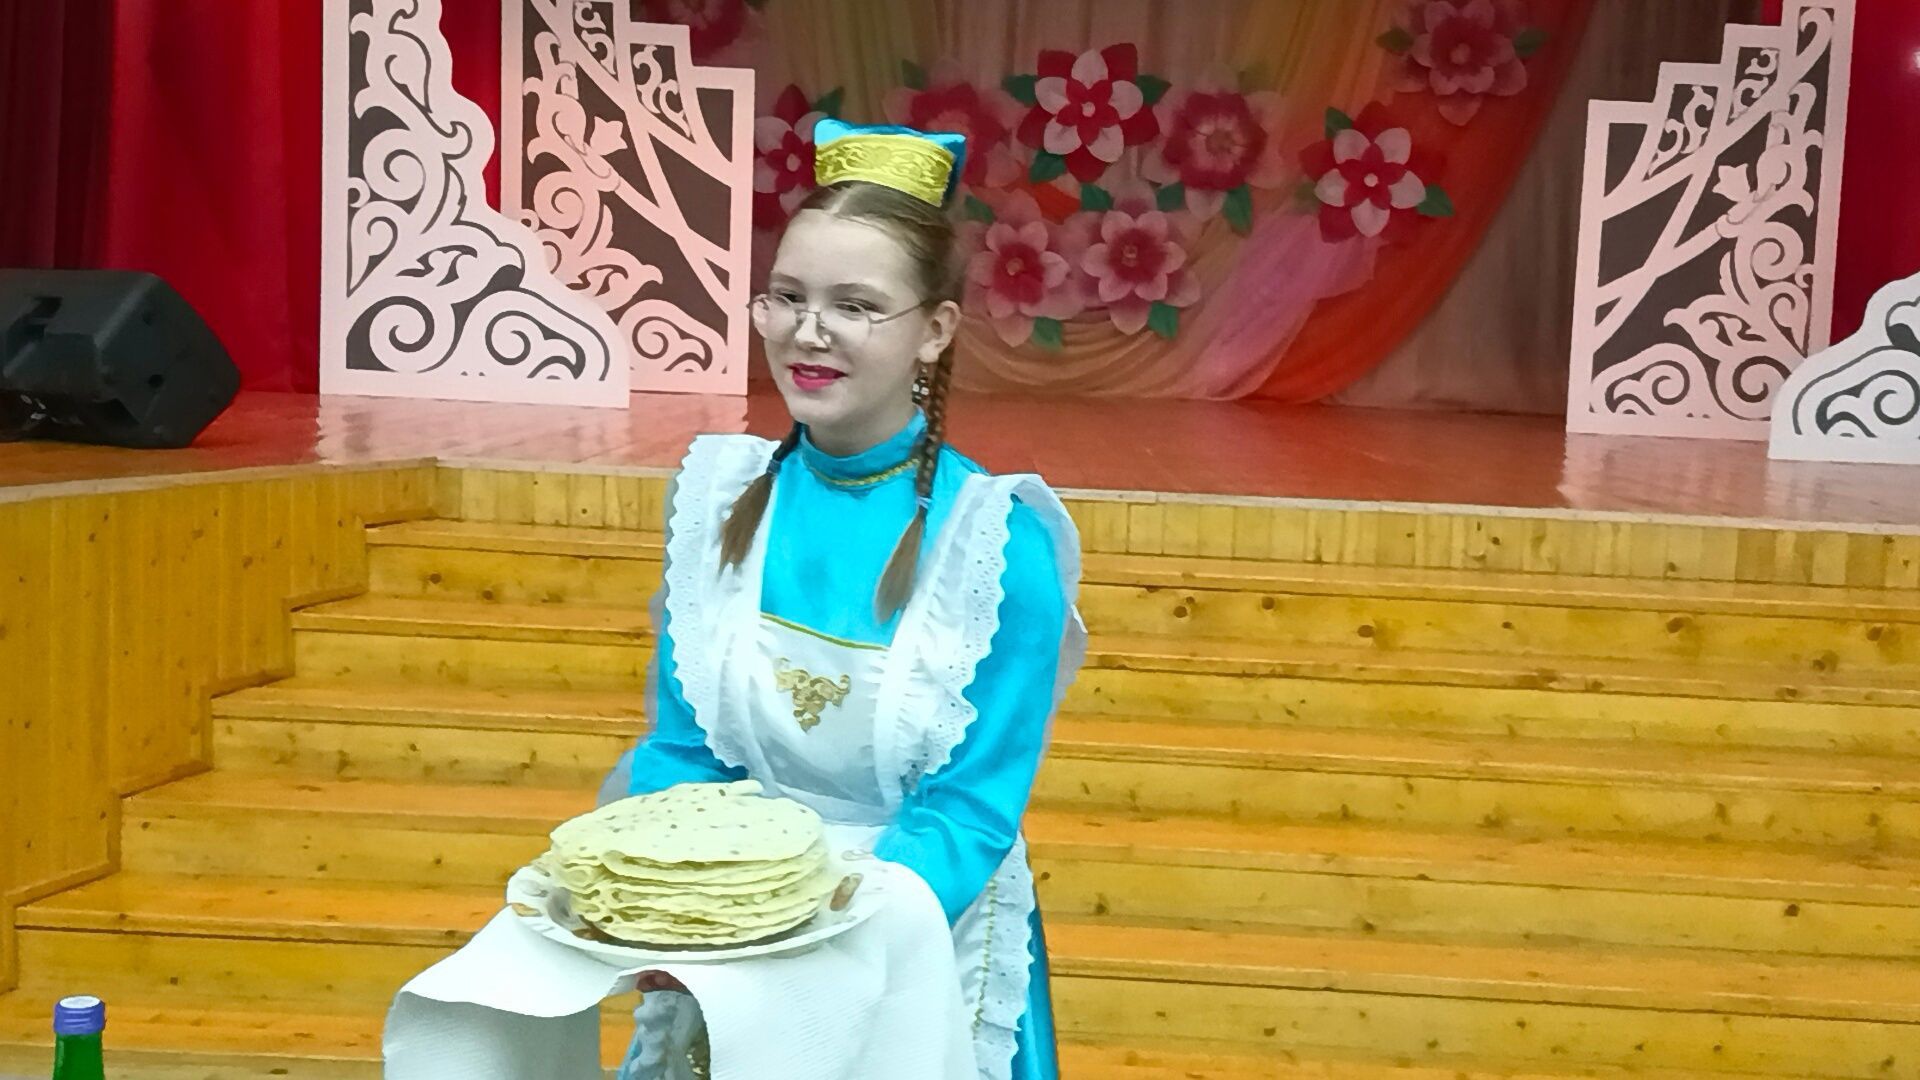 В Тетюшах состоялся районный этап конкурса «Татар кызы – 2023»